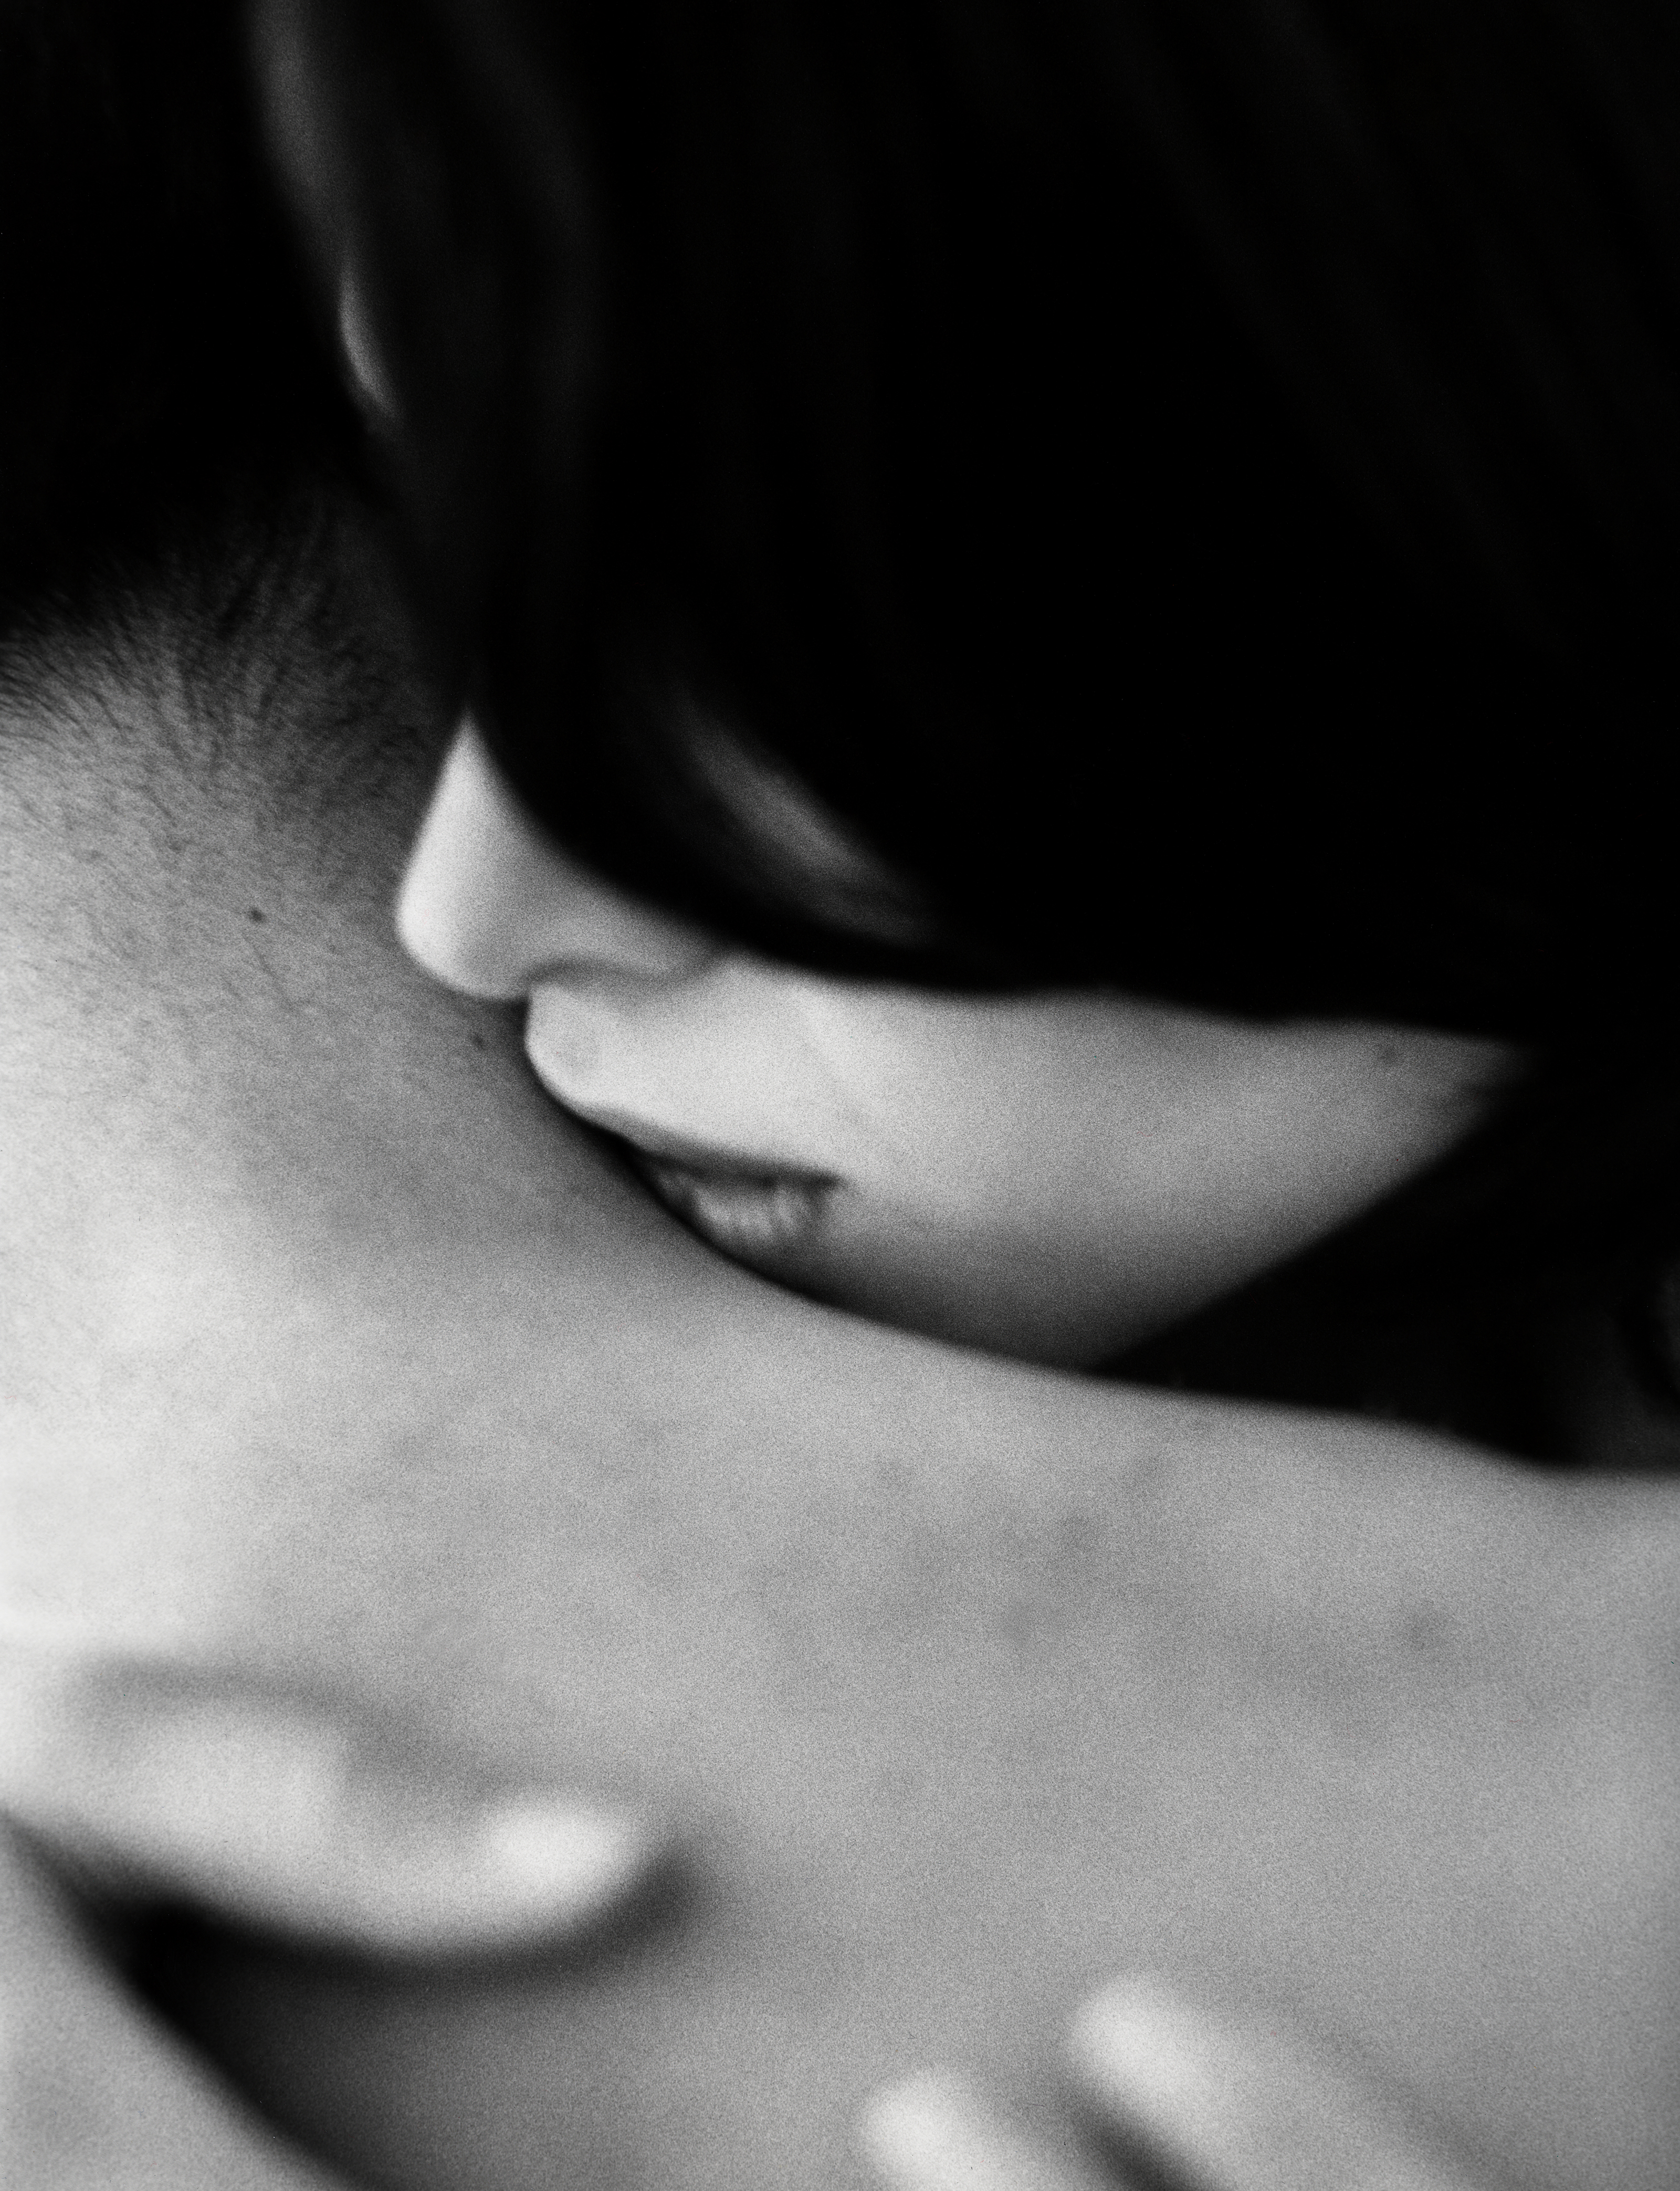 Очи страстные. Поцелуй в шею. Мужчина целует женщину в шею. Нежный поцелуй в шею. Поцелуй в шею мужчине.